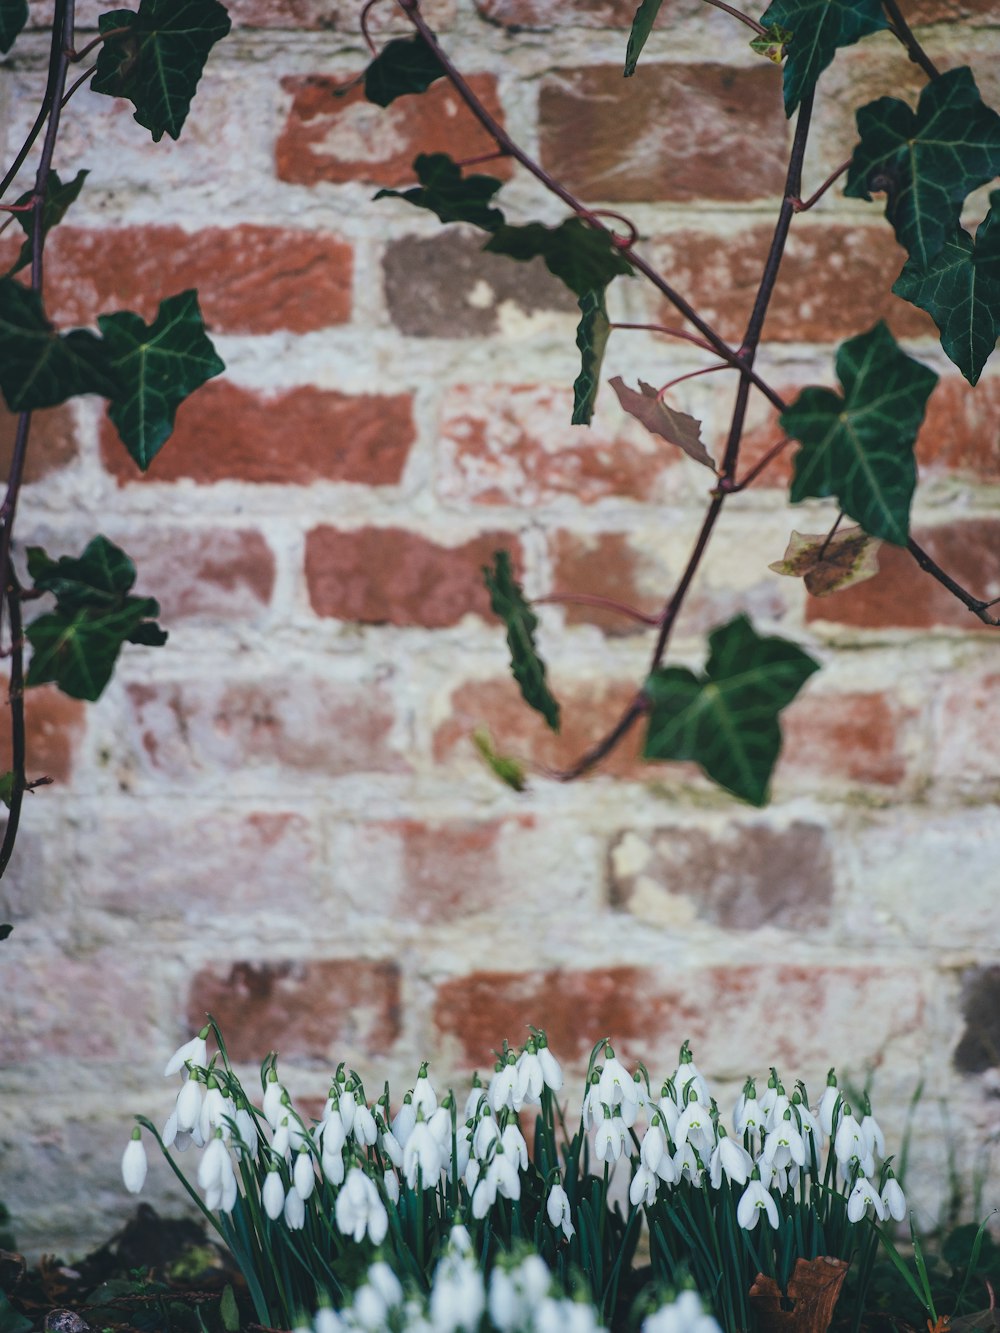 pianta di vite a foglia verde e tulipani bianchi nella fotografia a fuoco selettiva